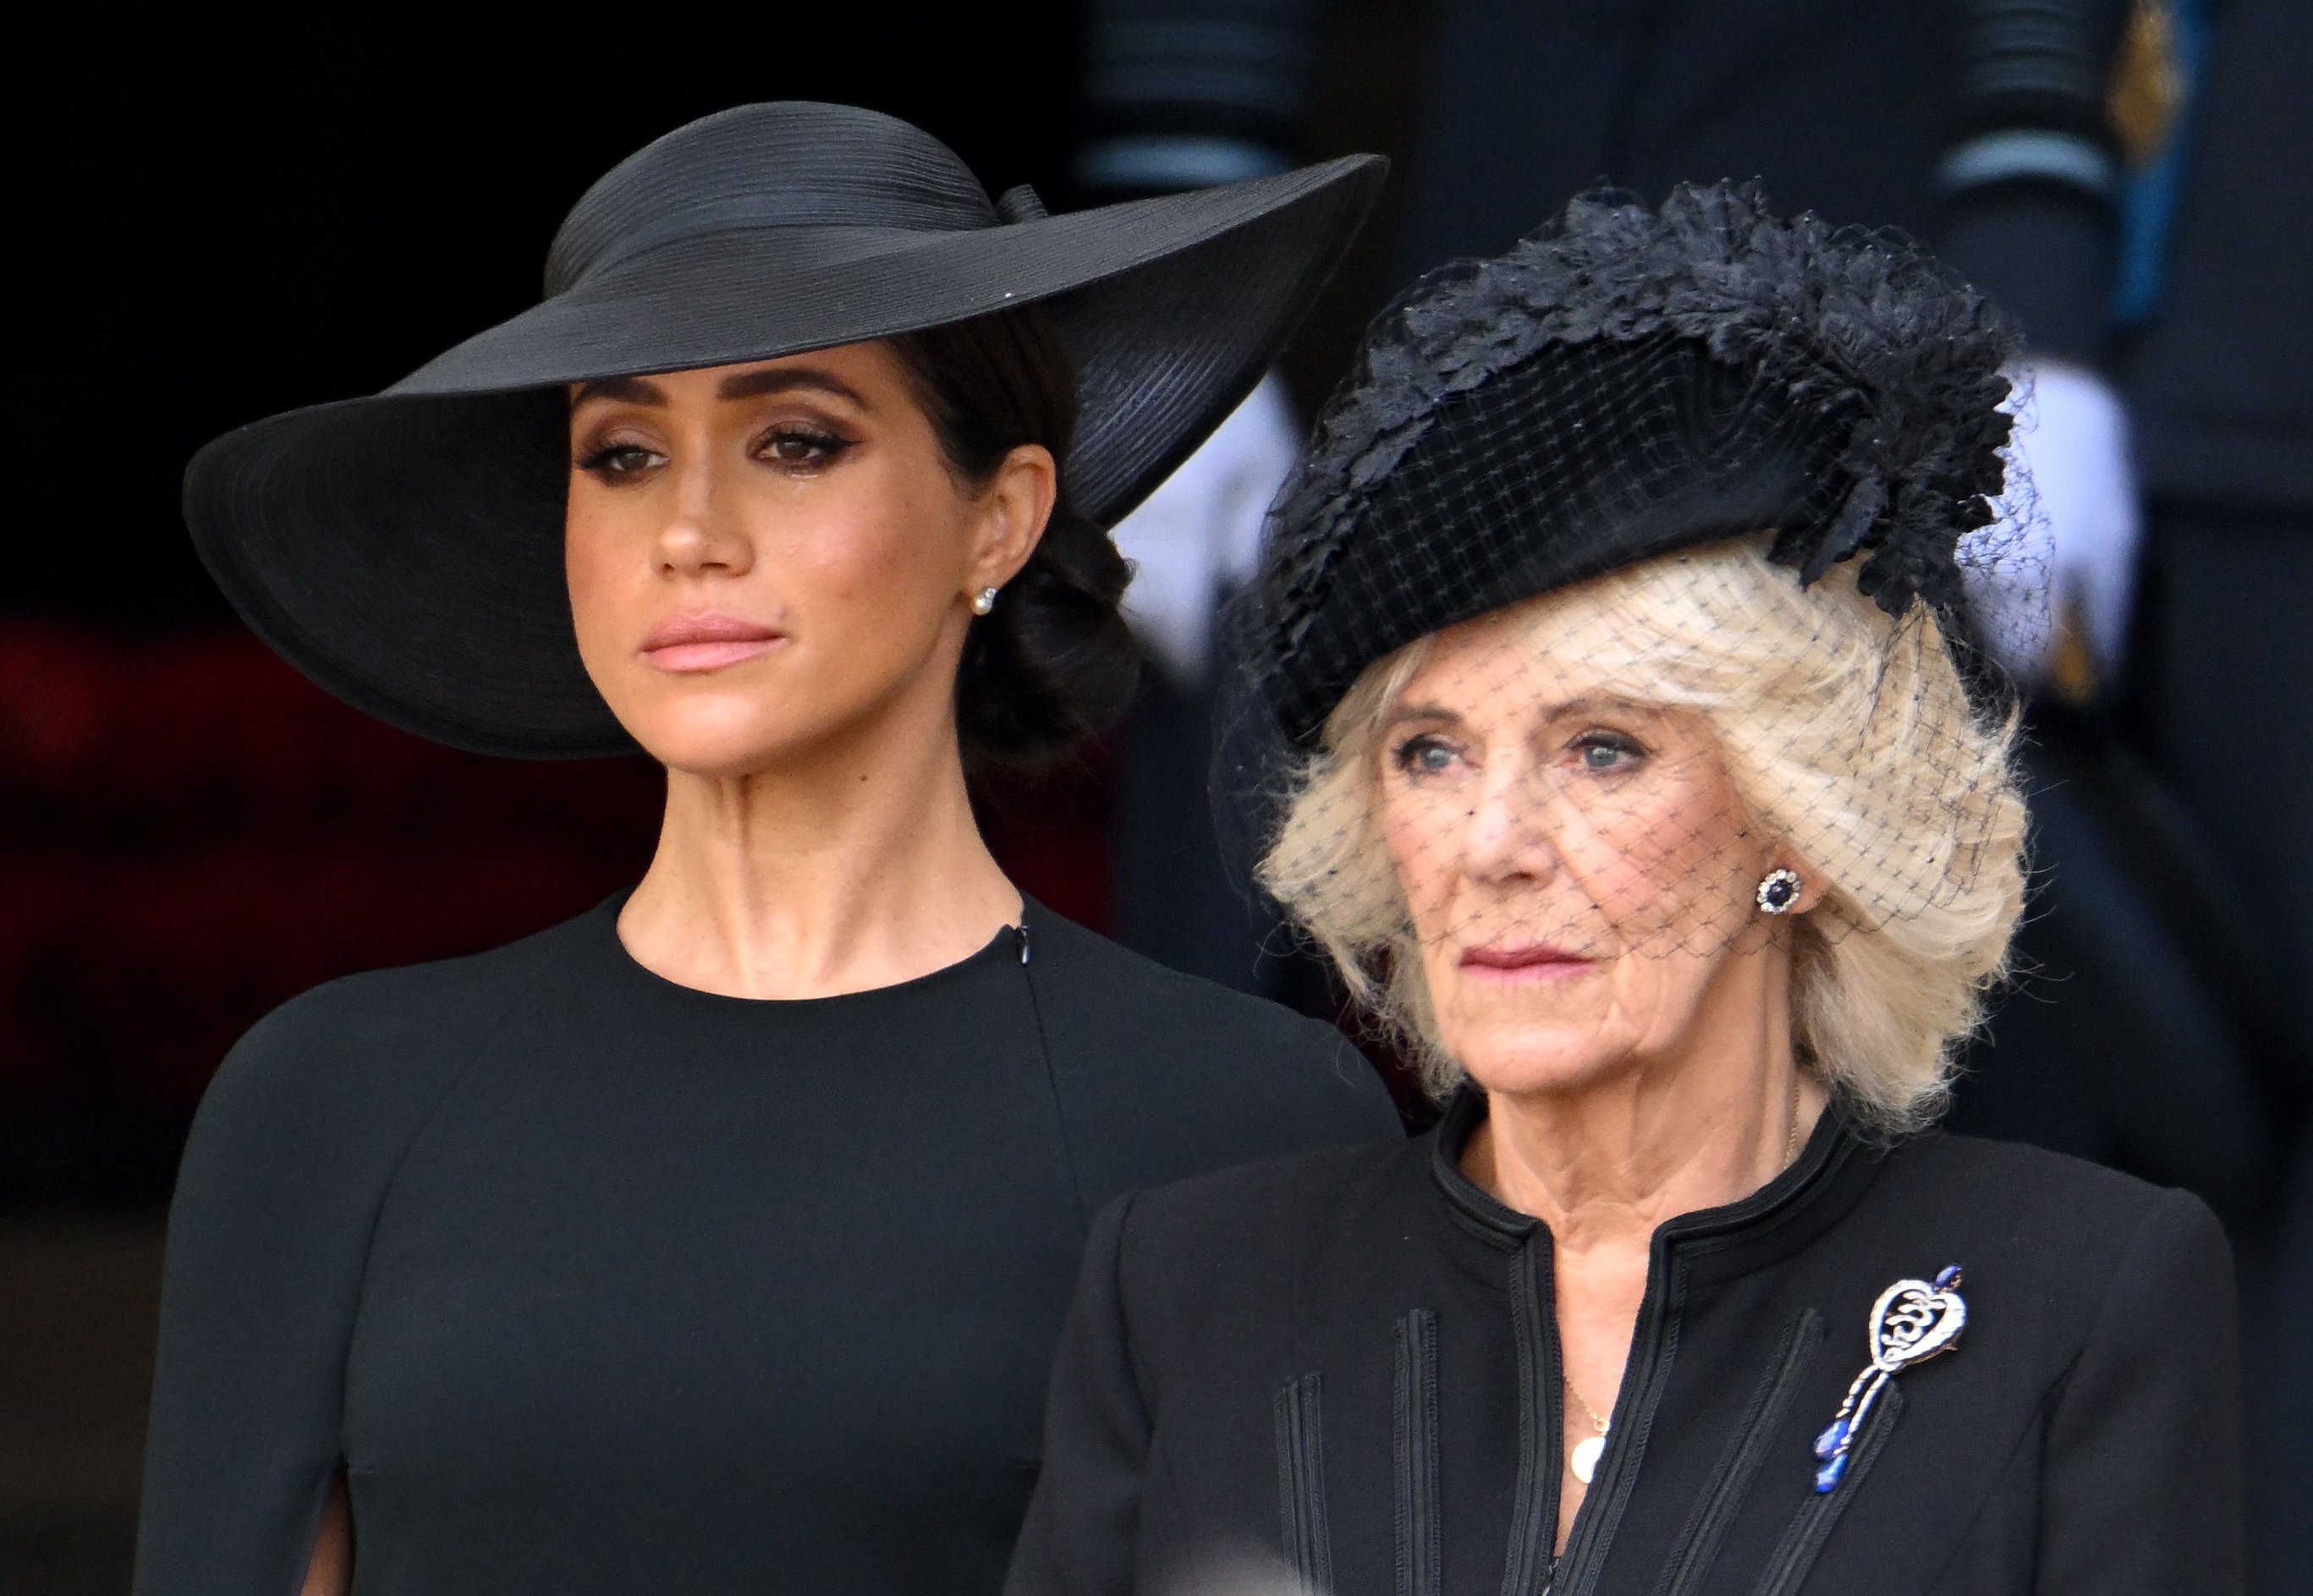 Meghan, duquesa de Sussex y Camilla, reina consorte durante el funeral de Estado de la reina Elizabeth II en la Abadía de Westminster el 19 de septiembre de 2022 en Londres, Inglaterra. | Foto: Getty Images